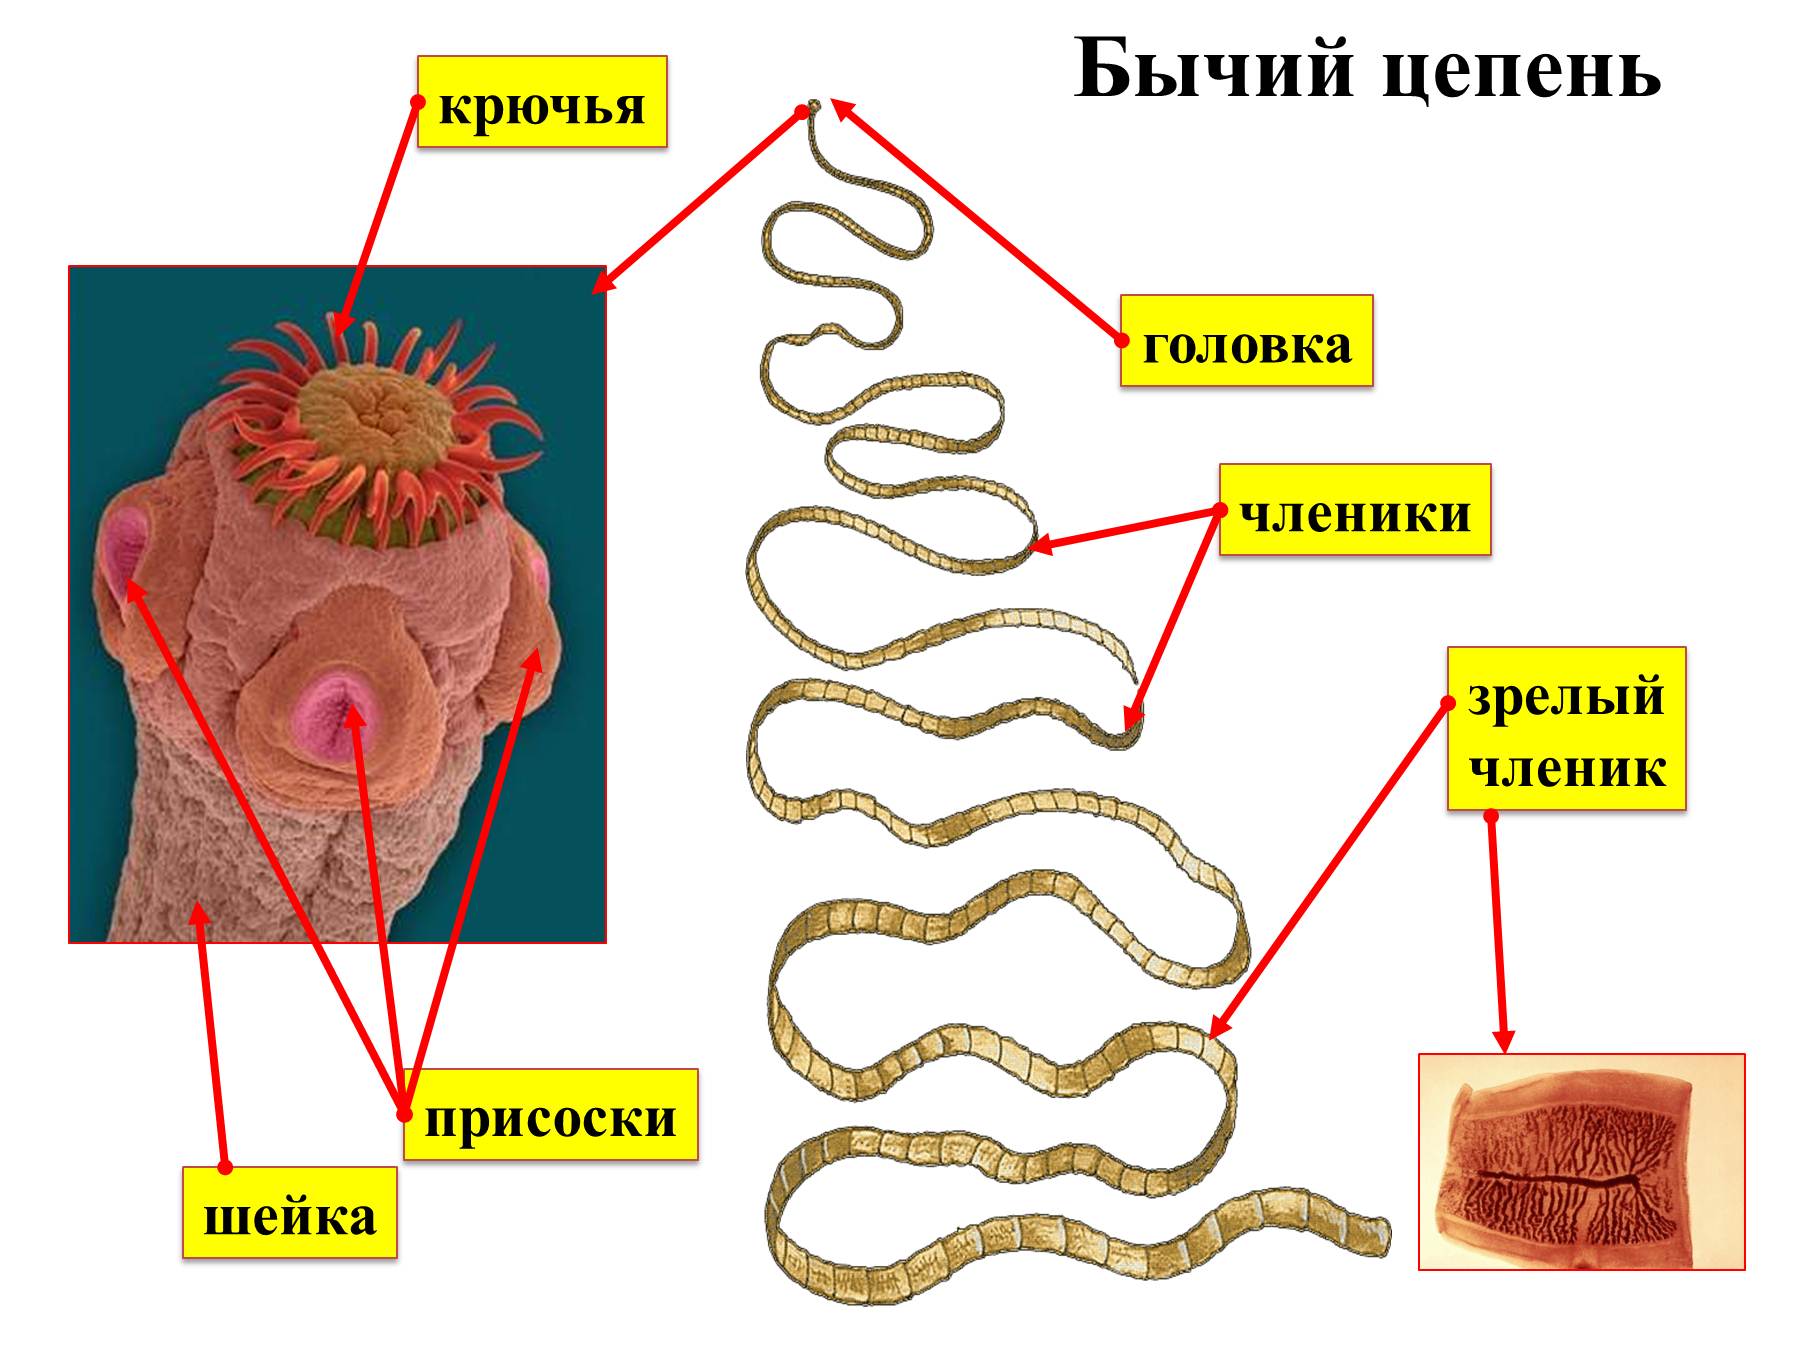 Членики ленточного червя. Taeniarhynchus saginatus бычий цепень. Паразитические ленточные черви строение. Строение ленточных червей паразитов. Паразитические черви гельминты строение.